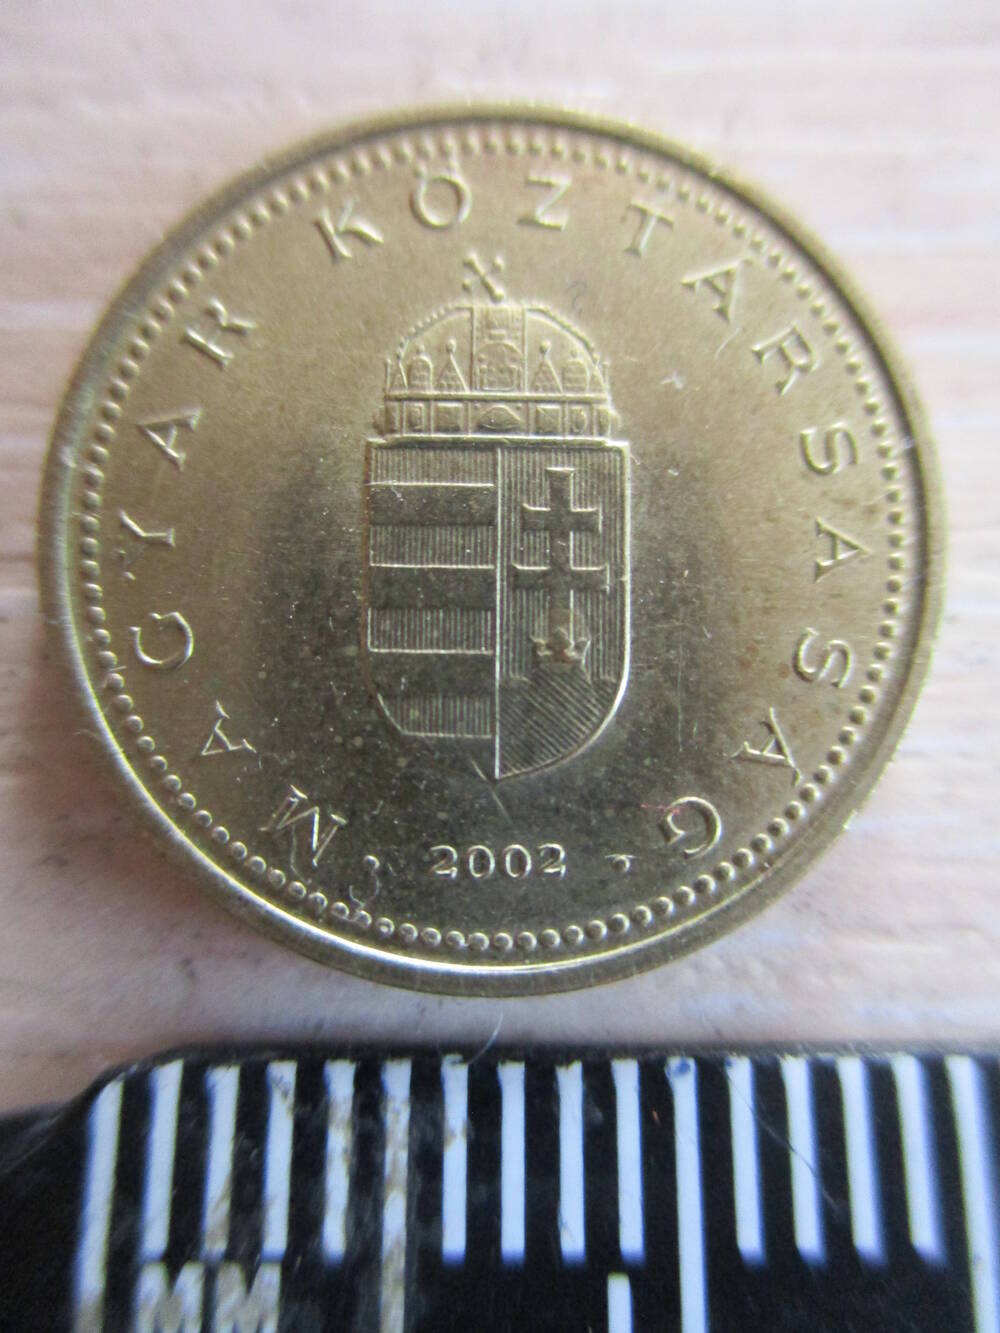 Монета Венгрии достоинством 1 форинт 2002 года.